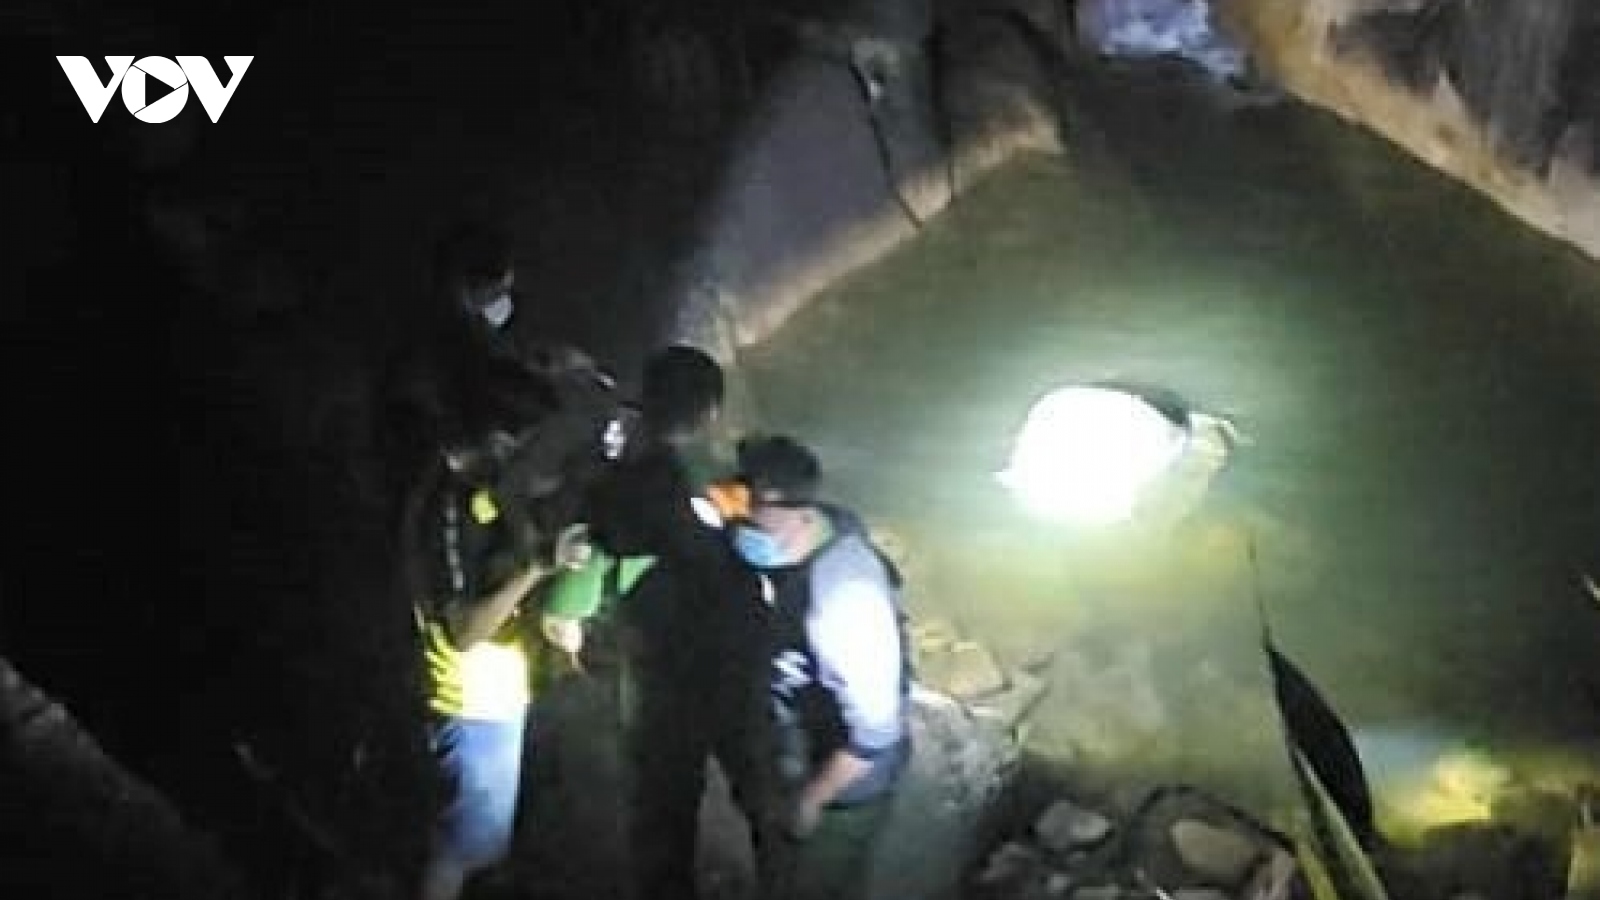 Phát hiện xác chết đang phân huỷ trong bao tải tại đèo nối Khánh Hòa - Lâm Đồng